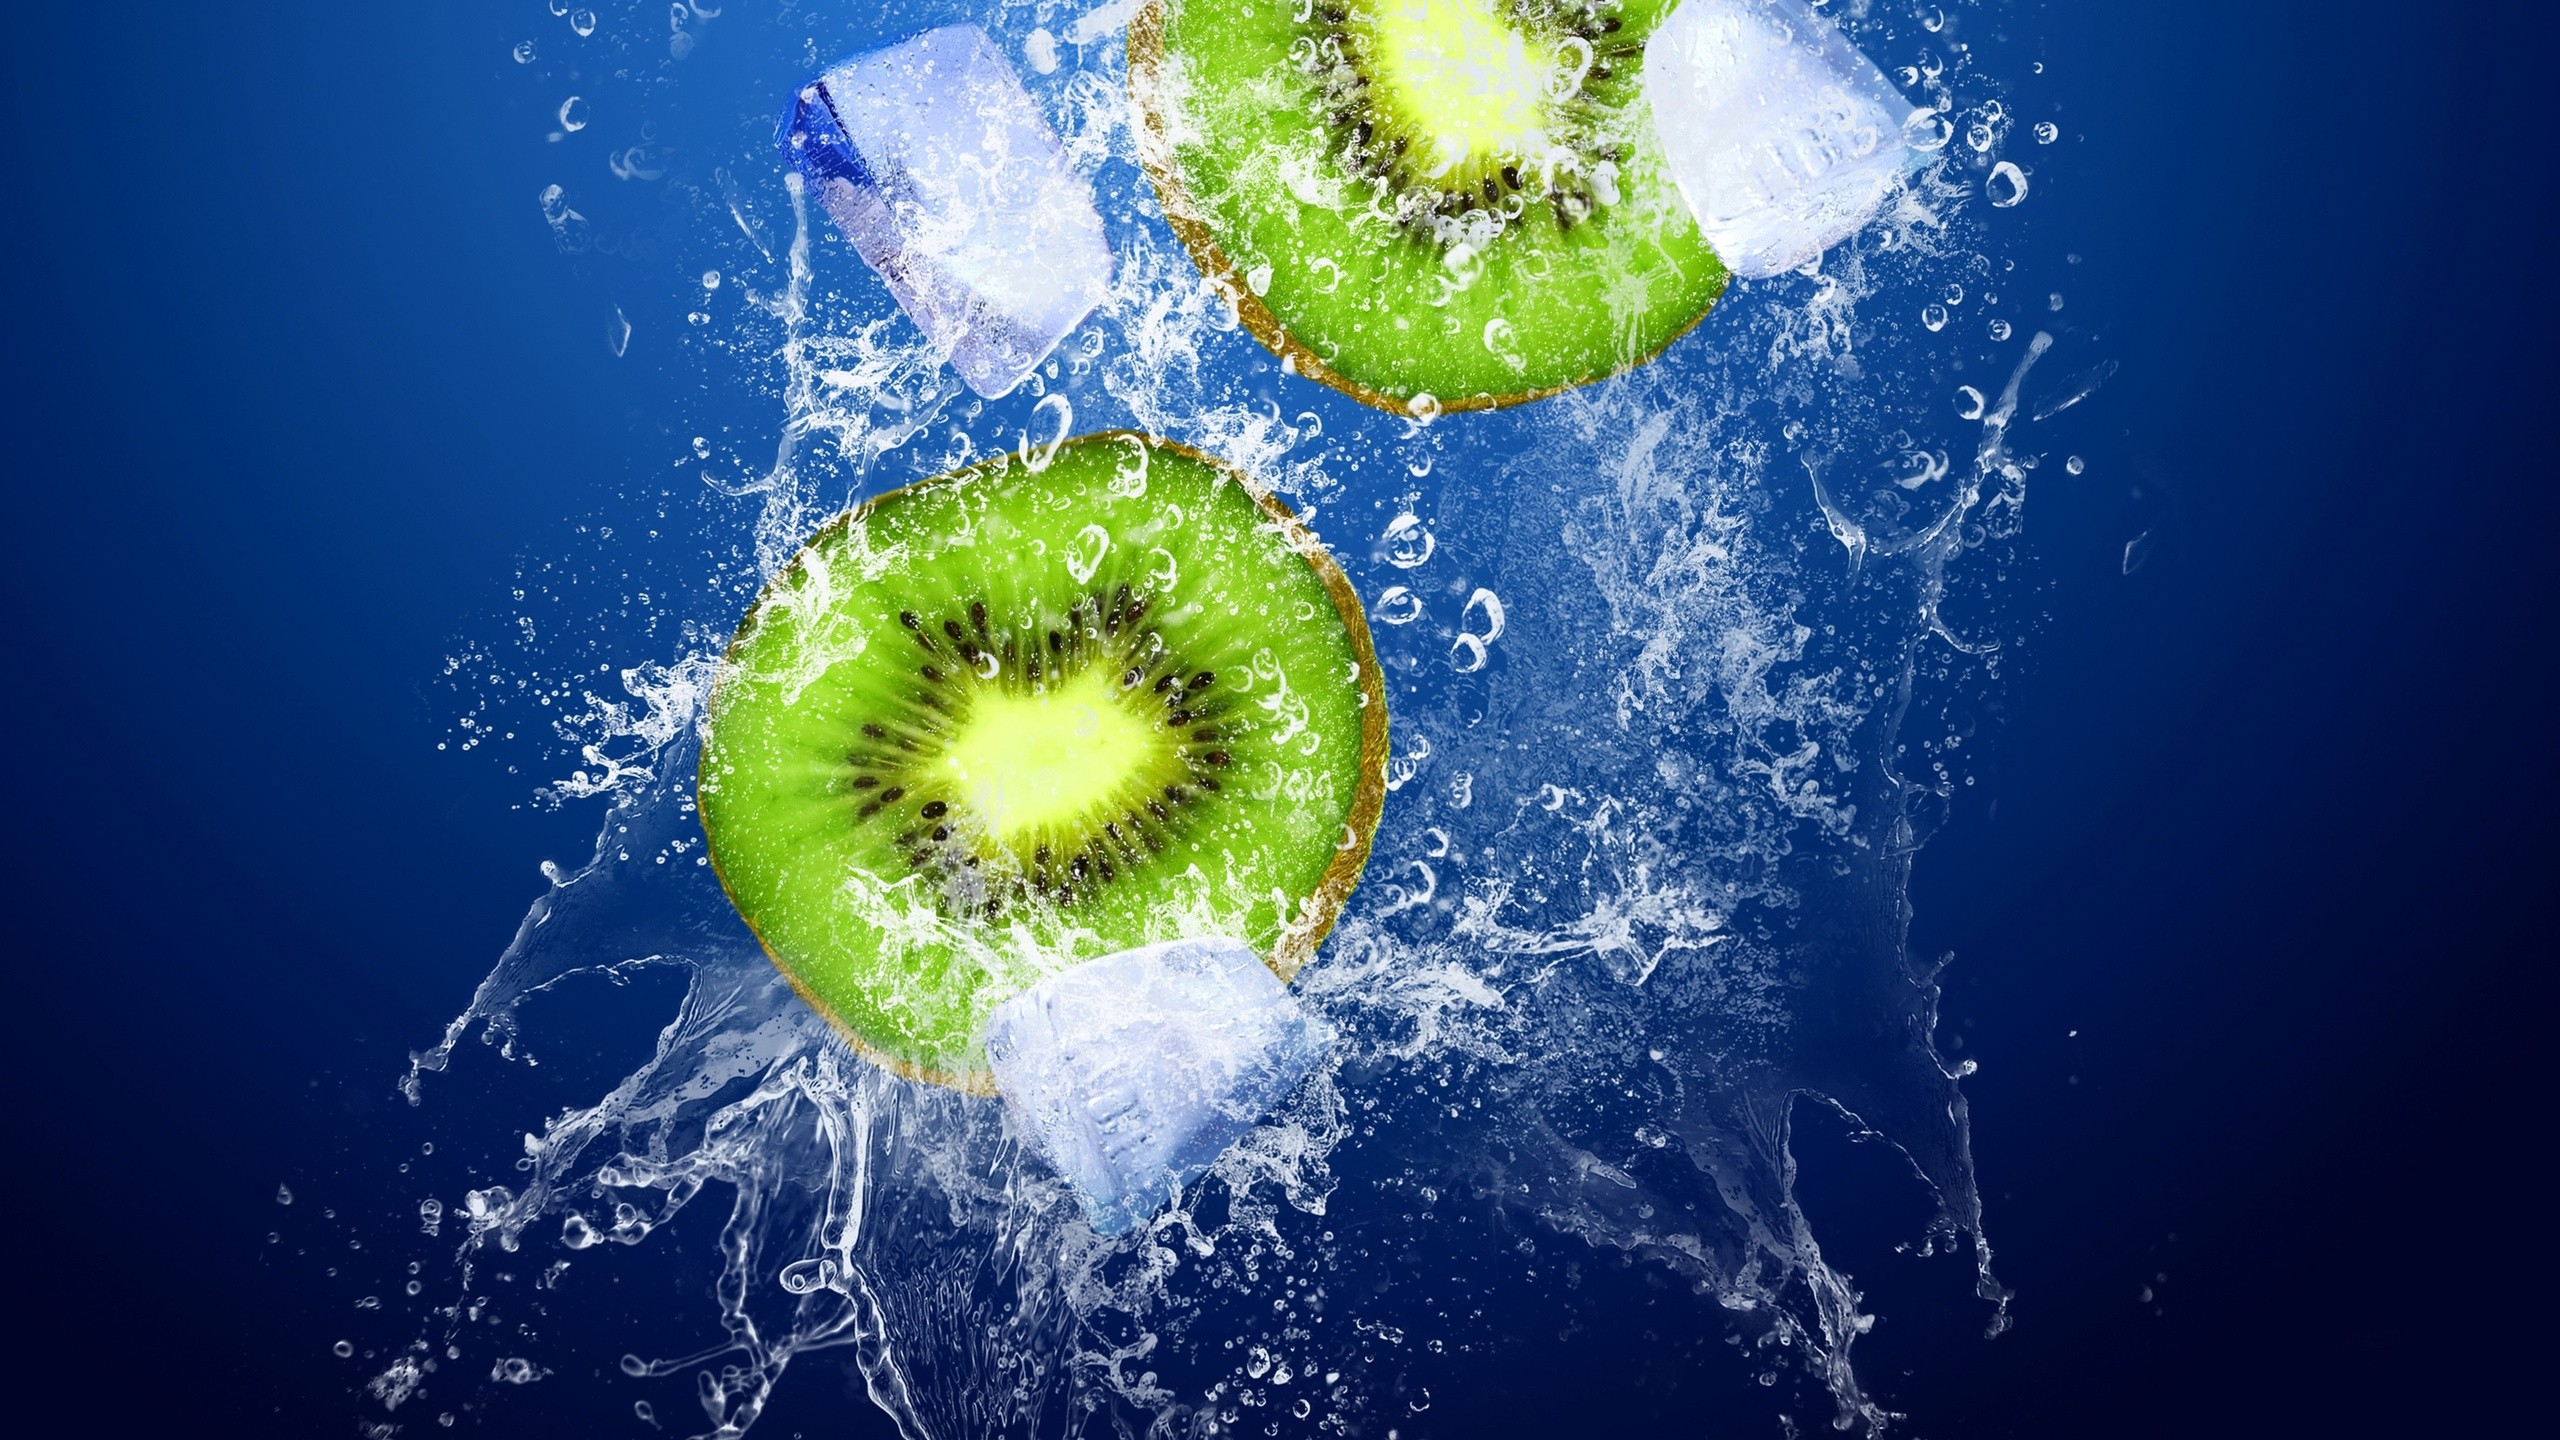 General 2560x1440 water splashes kiwi (fruit) ice food fruit simple background blue background